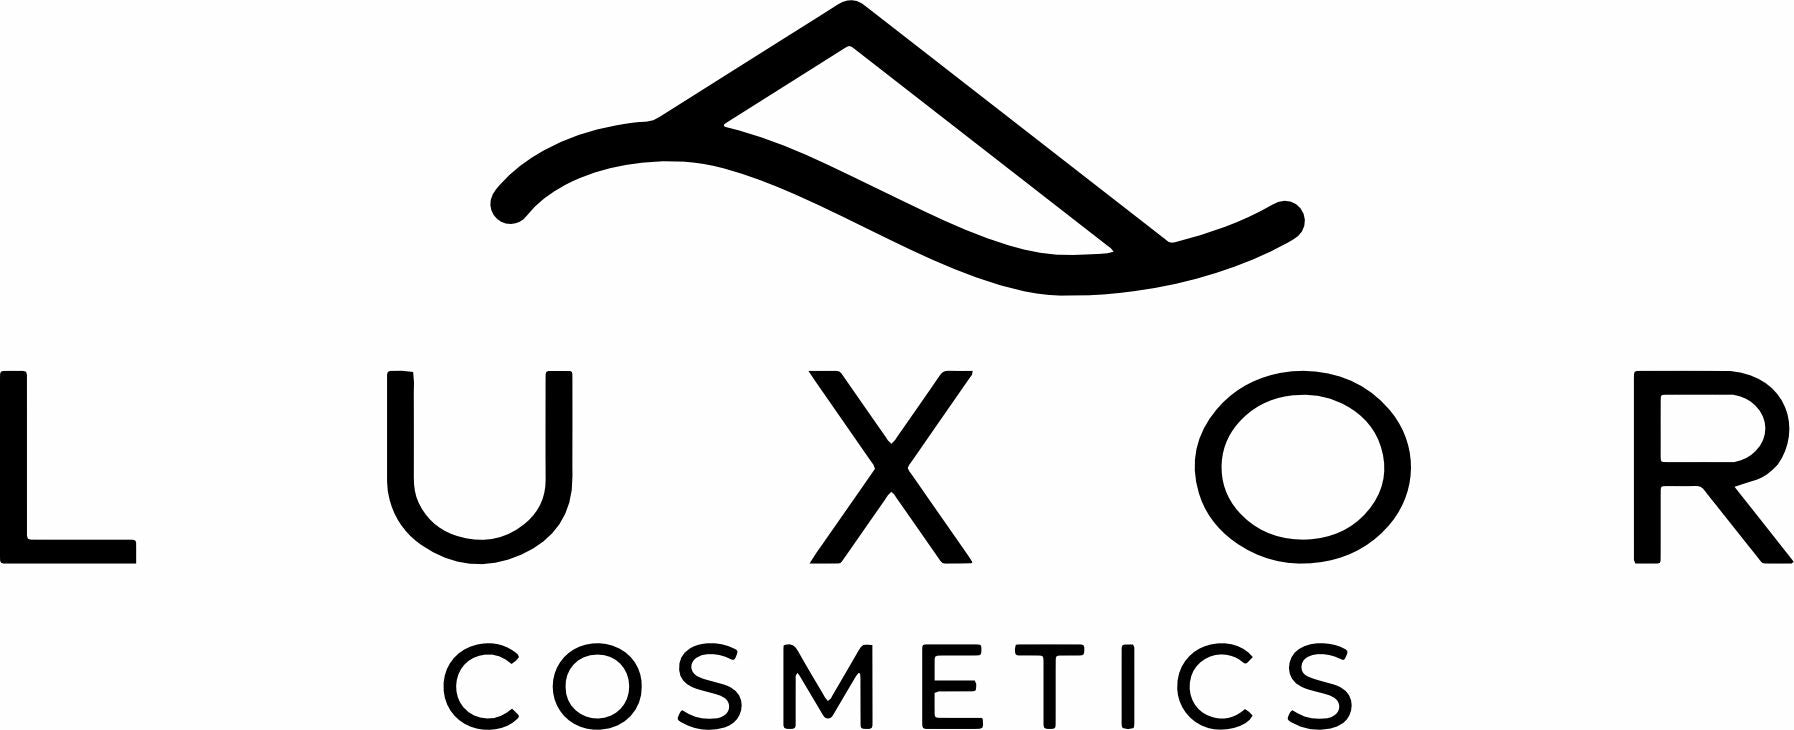 luxorcosmetics.mx